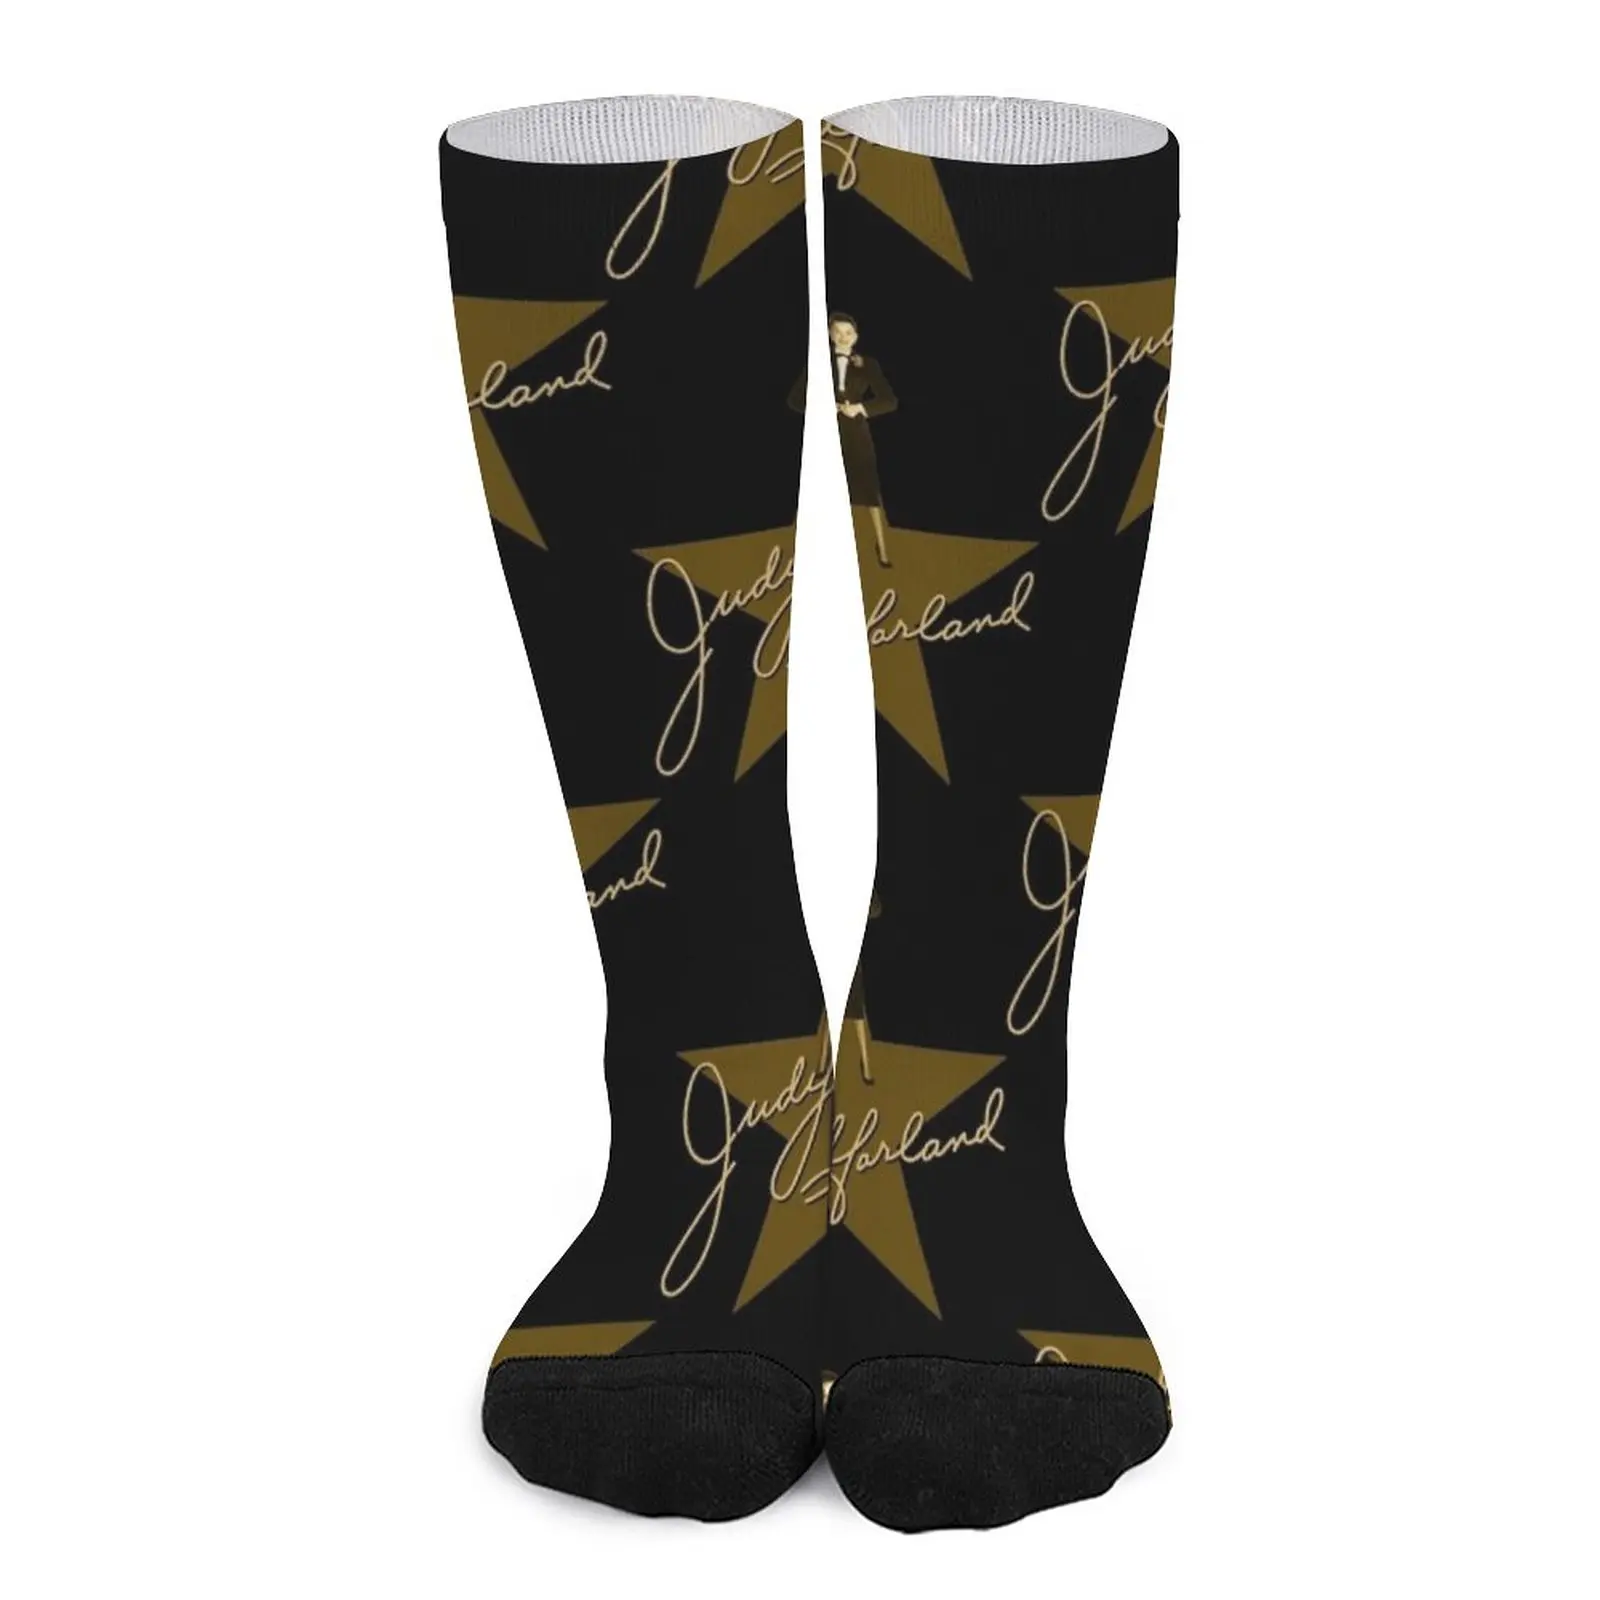 Judy Garland - Signature Socks Ankle socks woman Sports socks